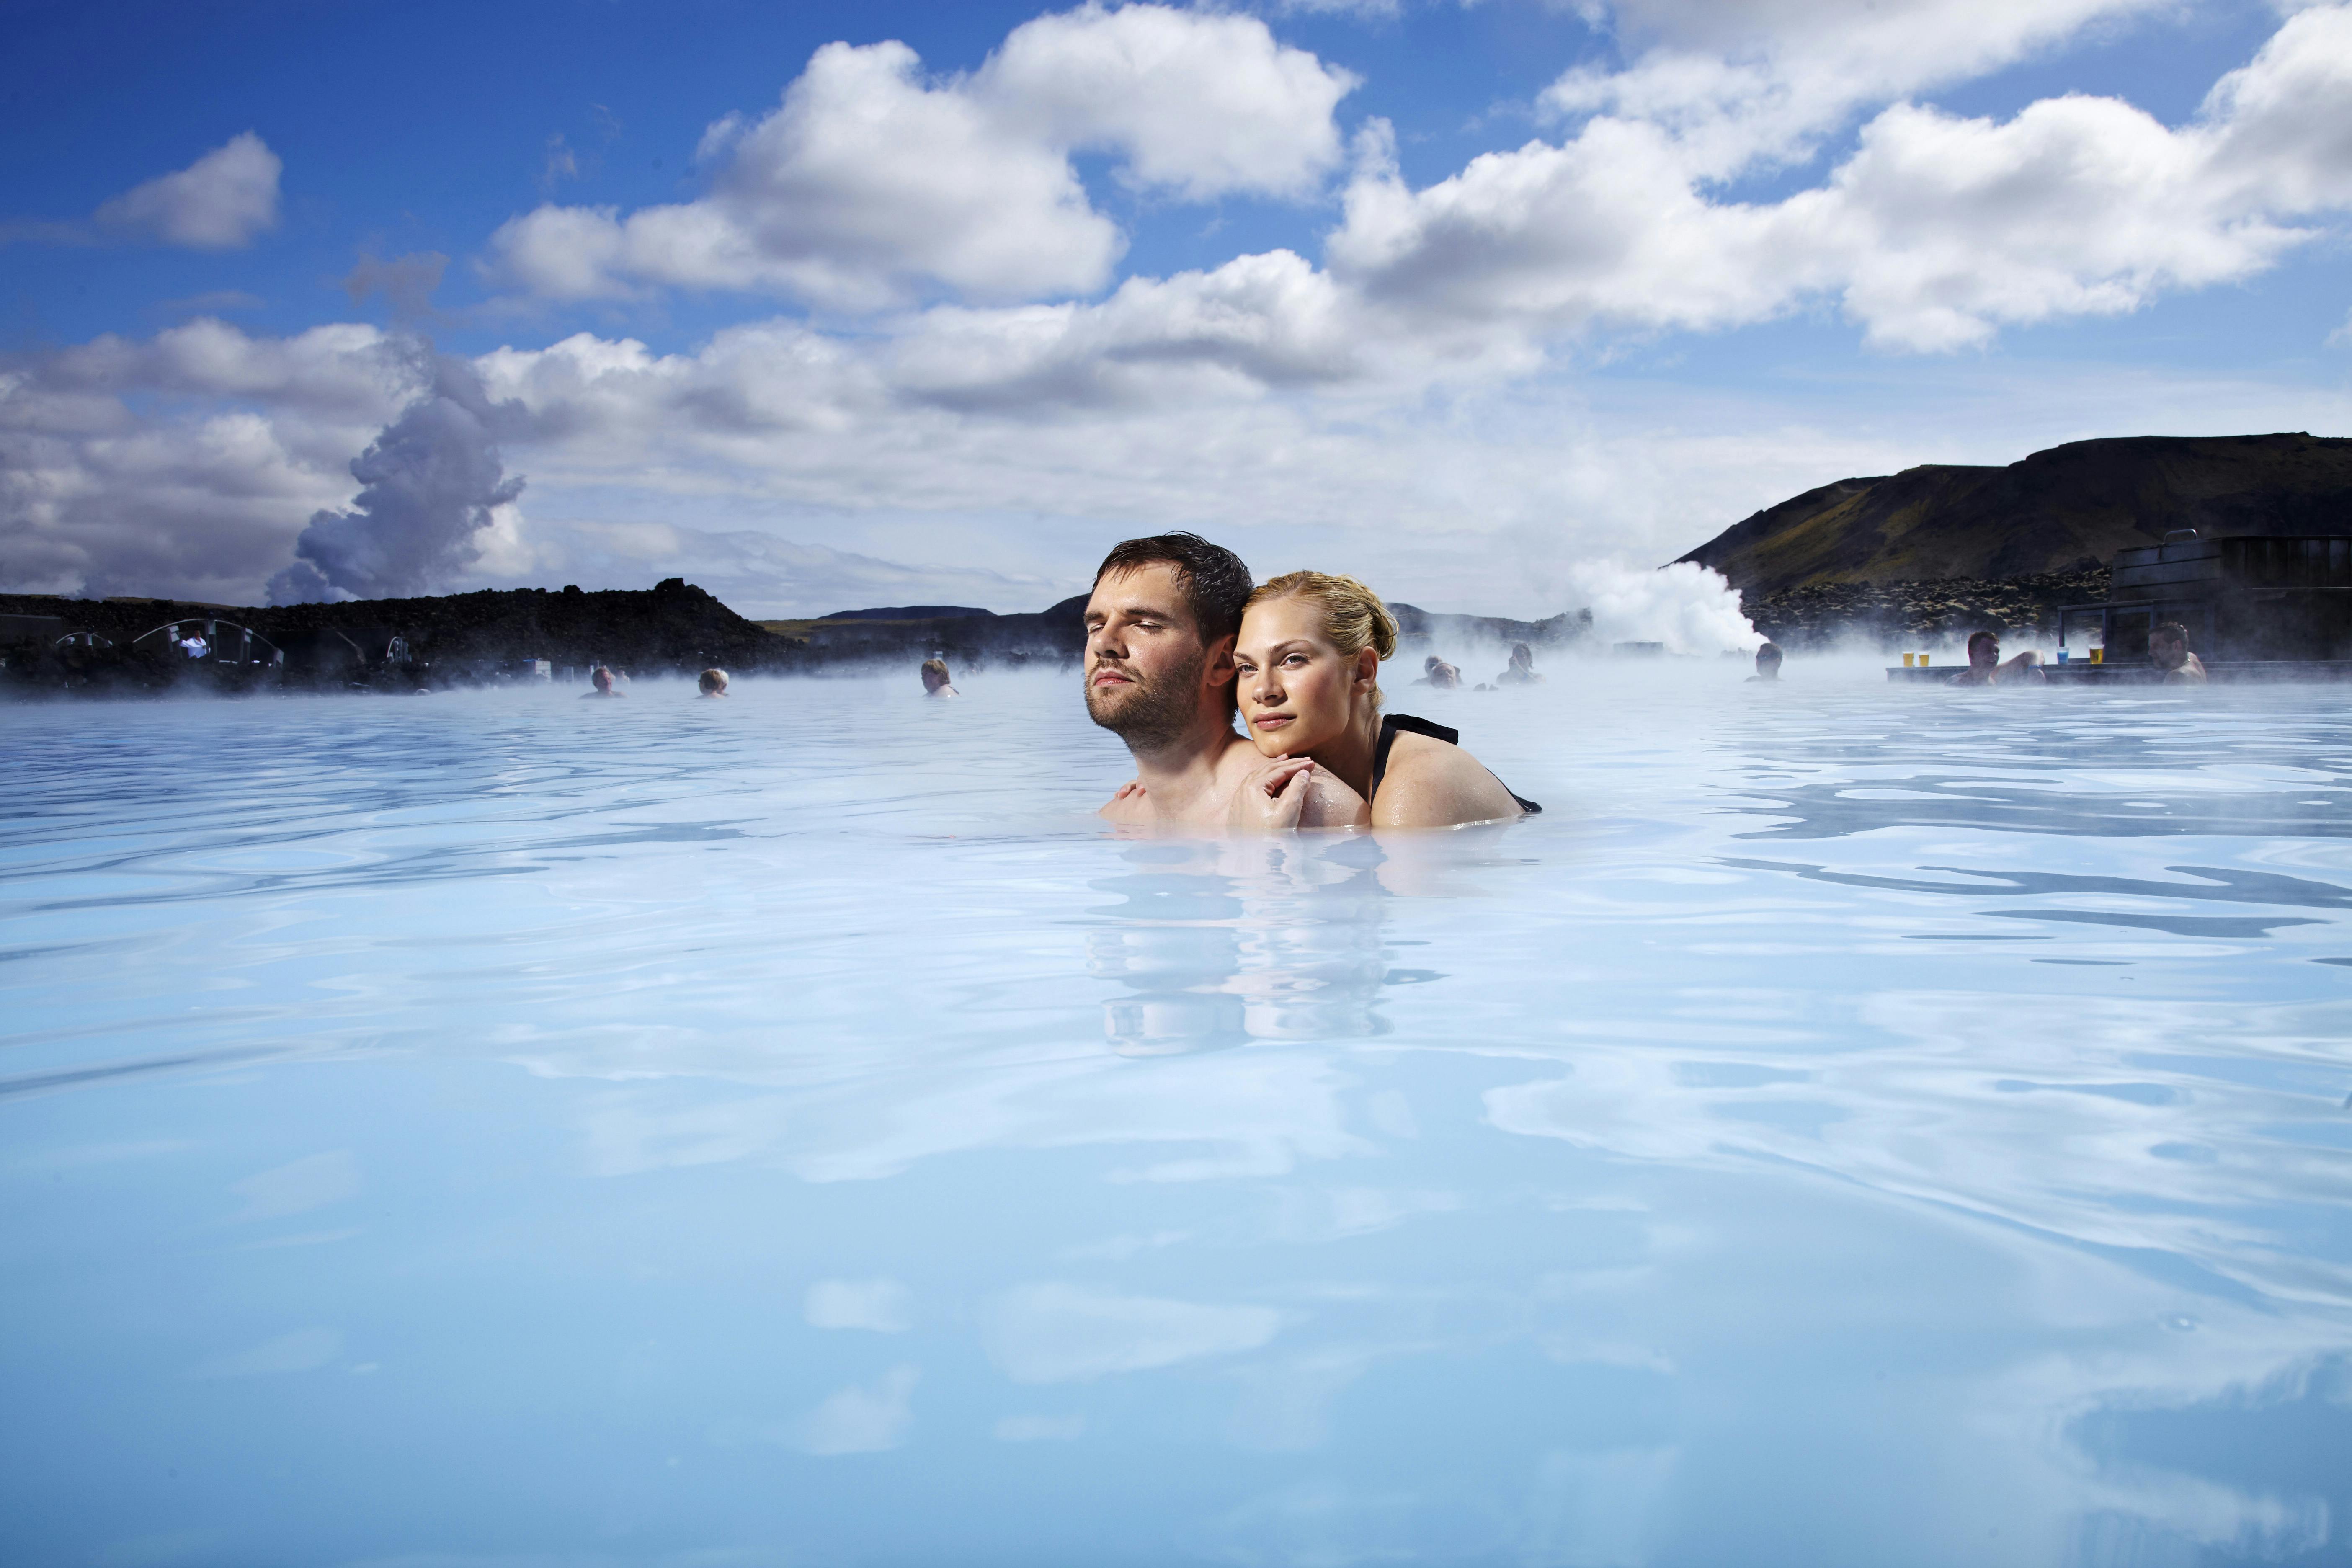 Nella penisola di Reykjanes, si trova la Laguna Blu, una spa rilassante e romantica.